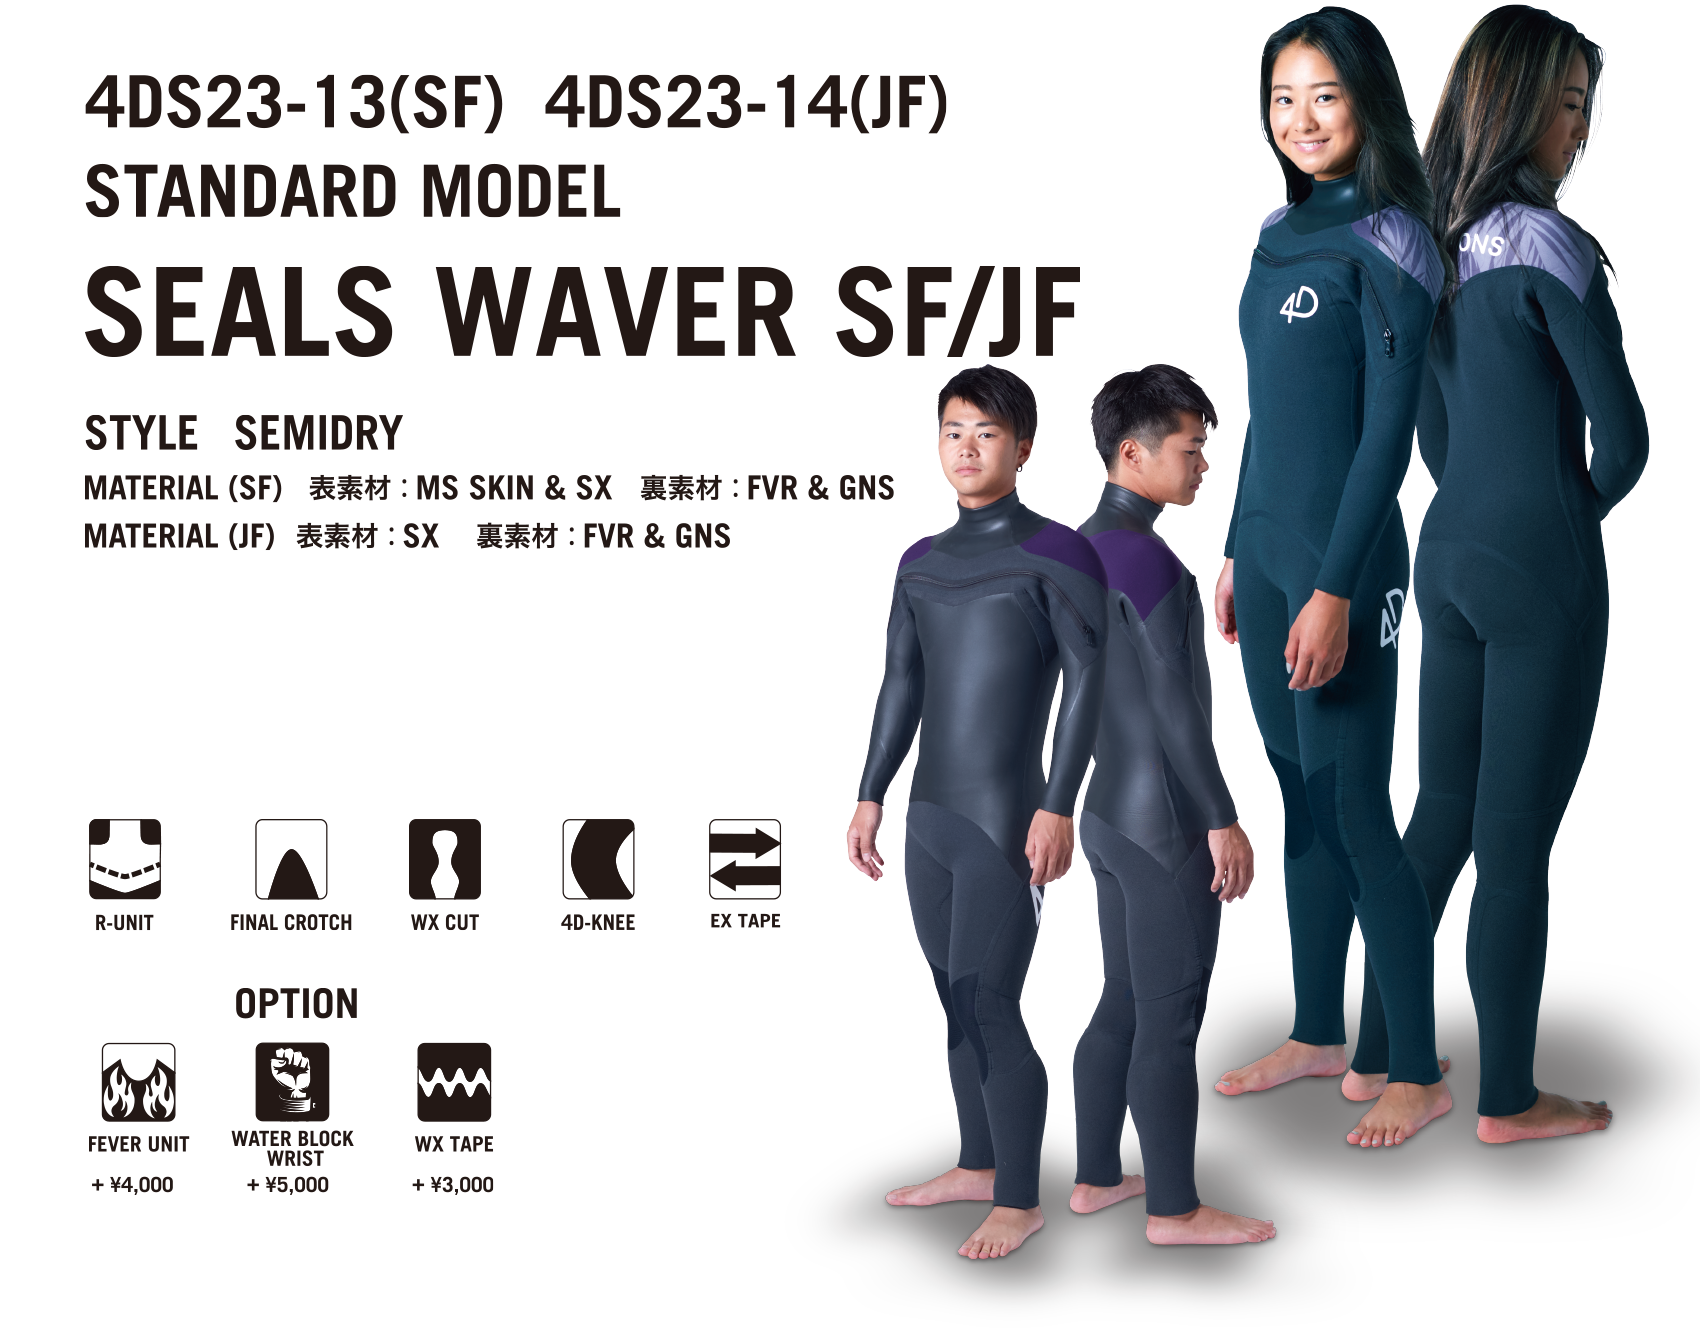 SEALS WAVER SF/JF